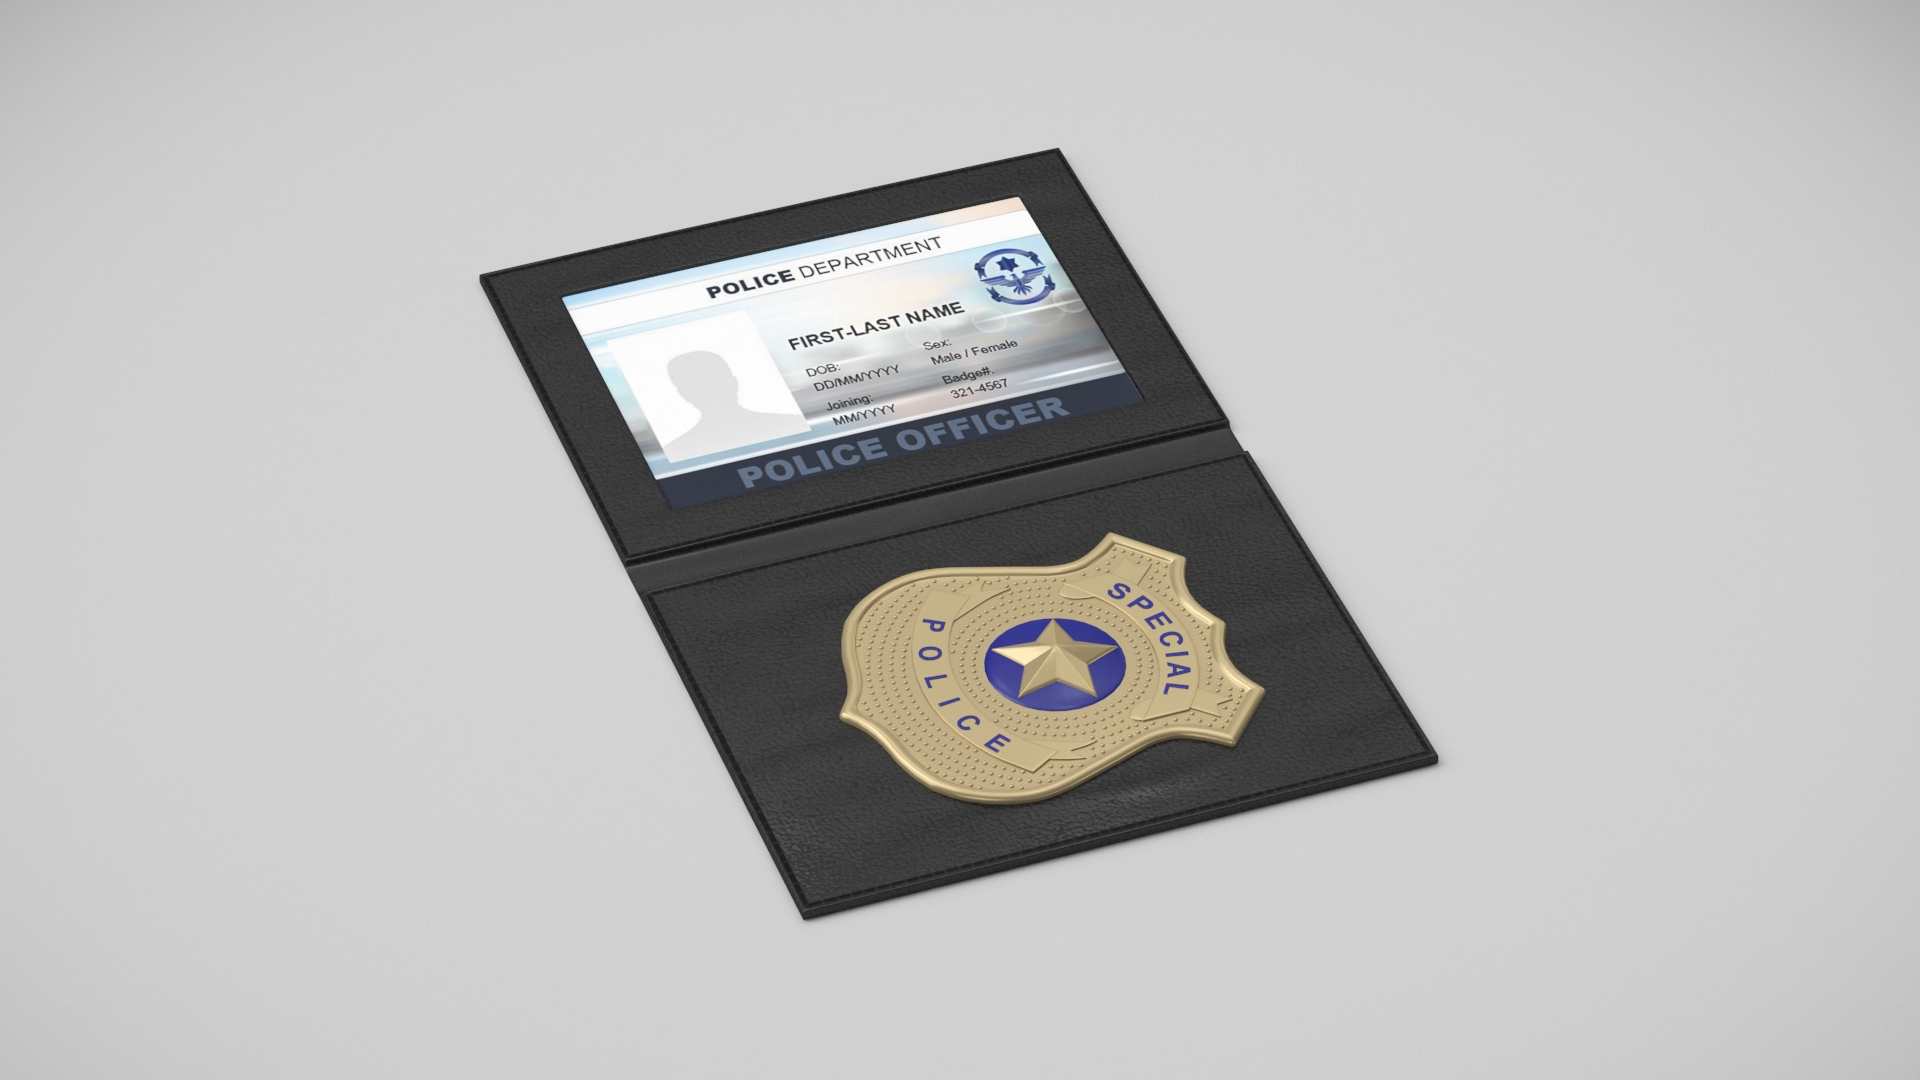 3D FBI Badges Collection 2 - TurboSquid 2080607